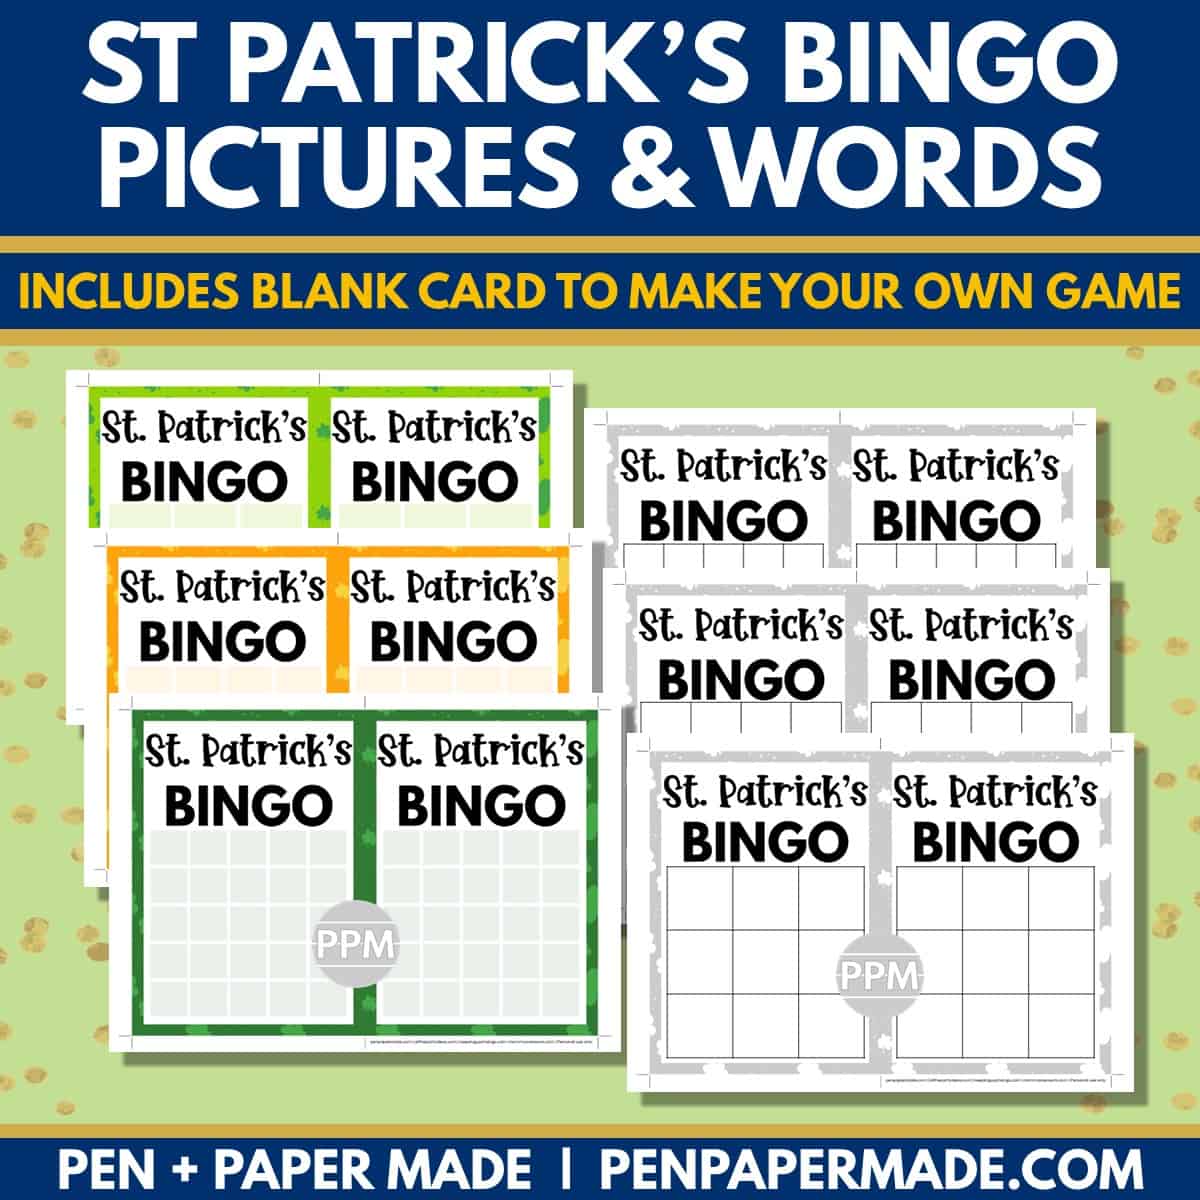 st. patrick's day bingo 5x5, 4x4, 3x3 bingo card blank template.